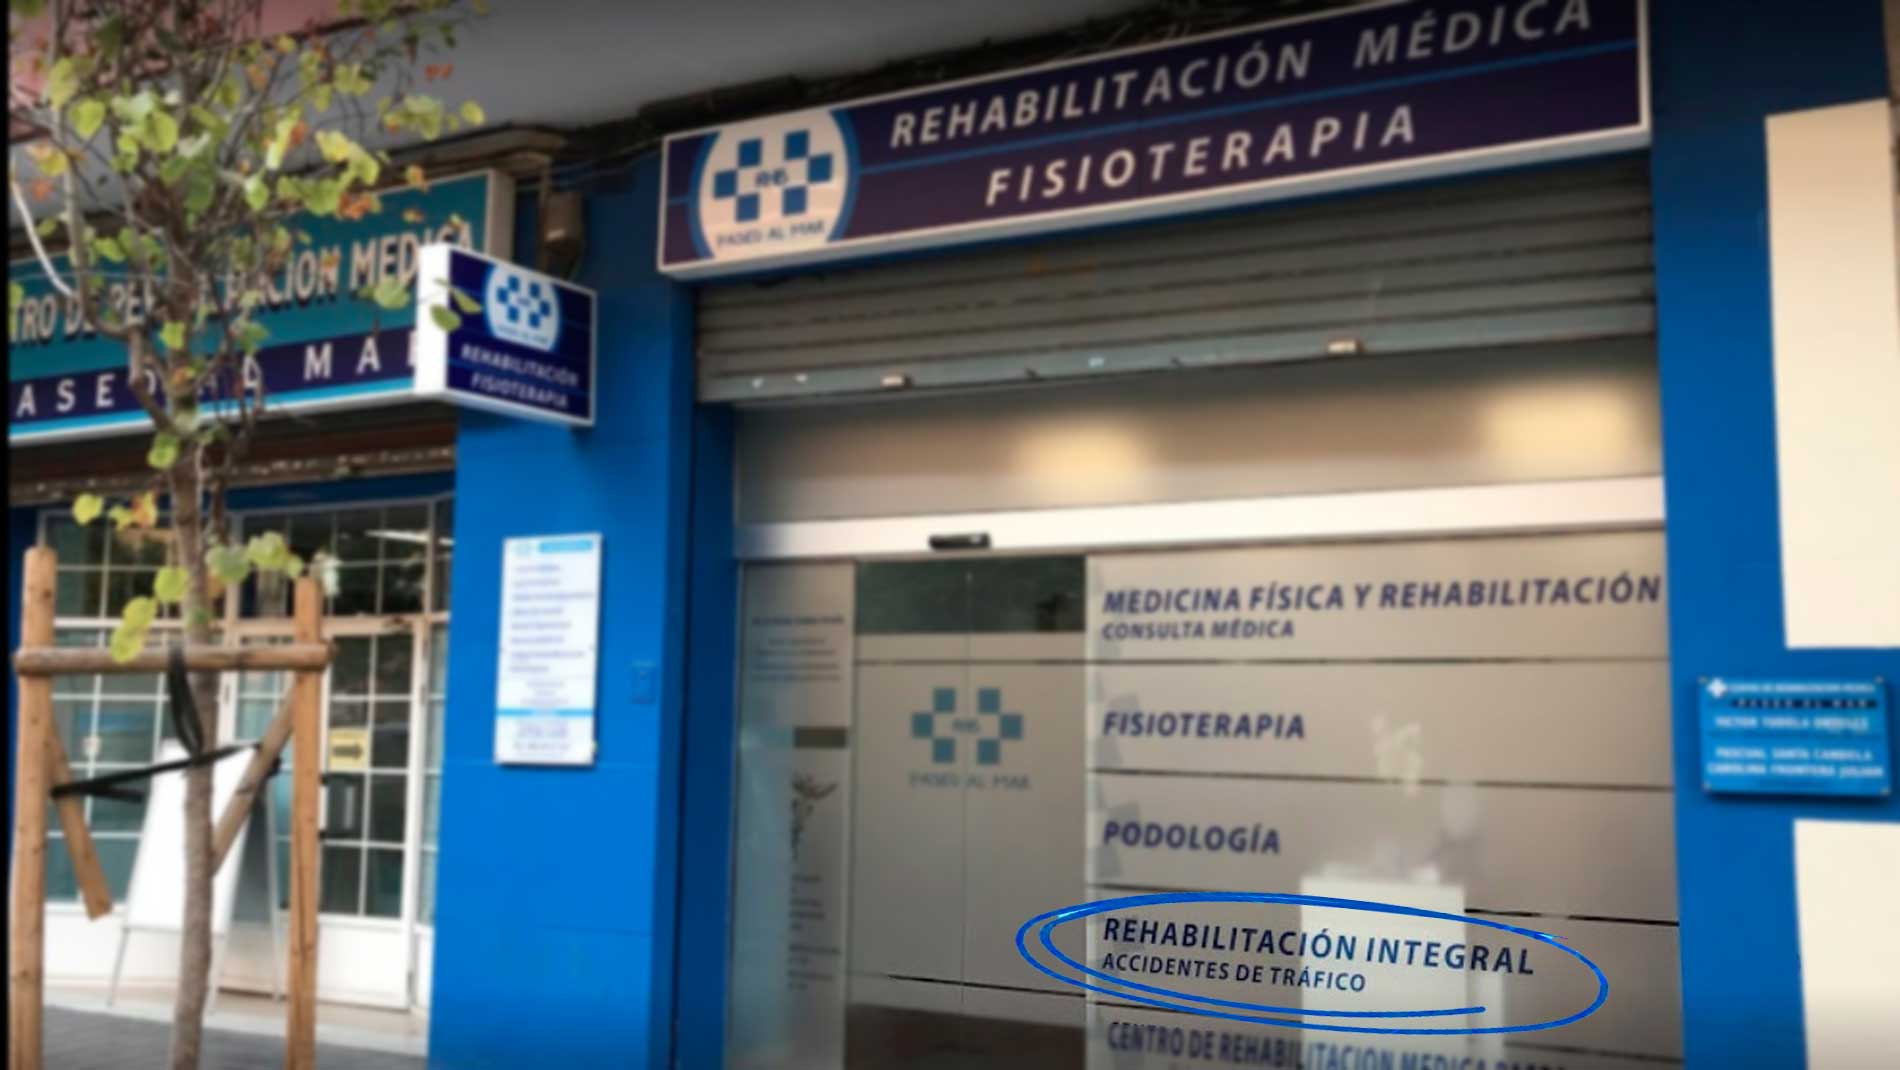 Centro de Rehabilitación Integral de Accidentes de Tráfico en Valencia